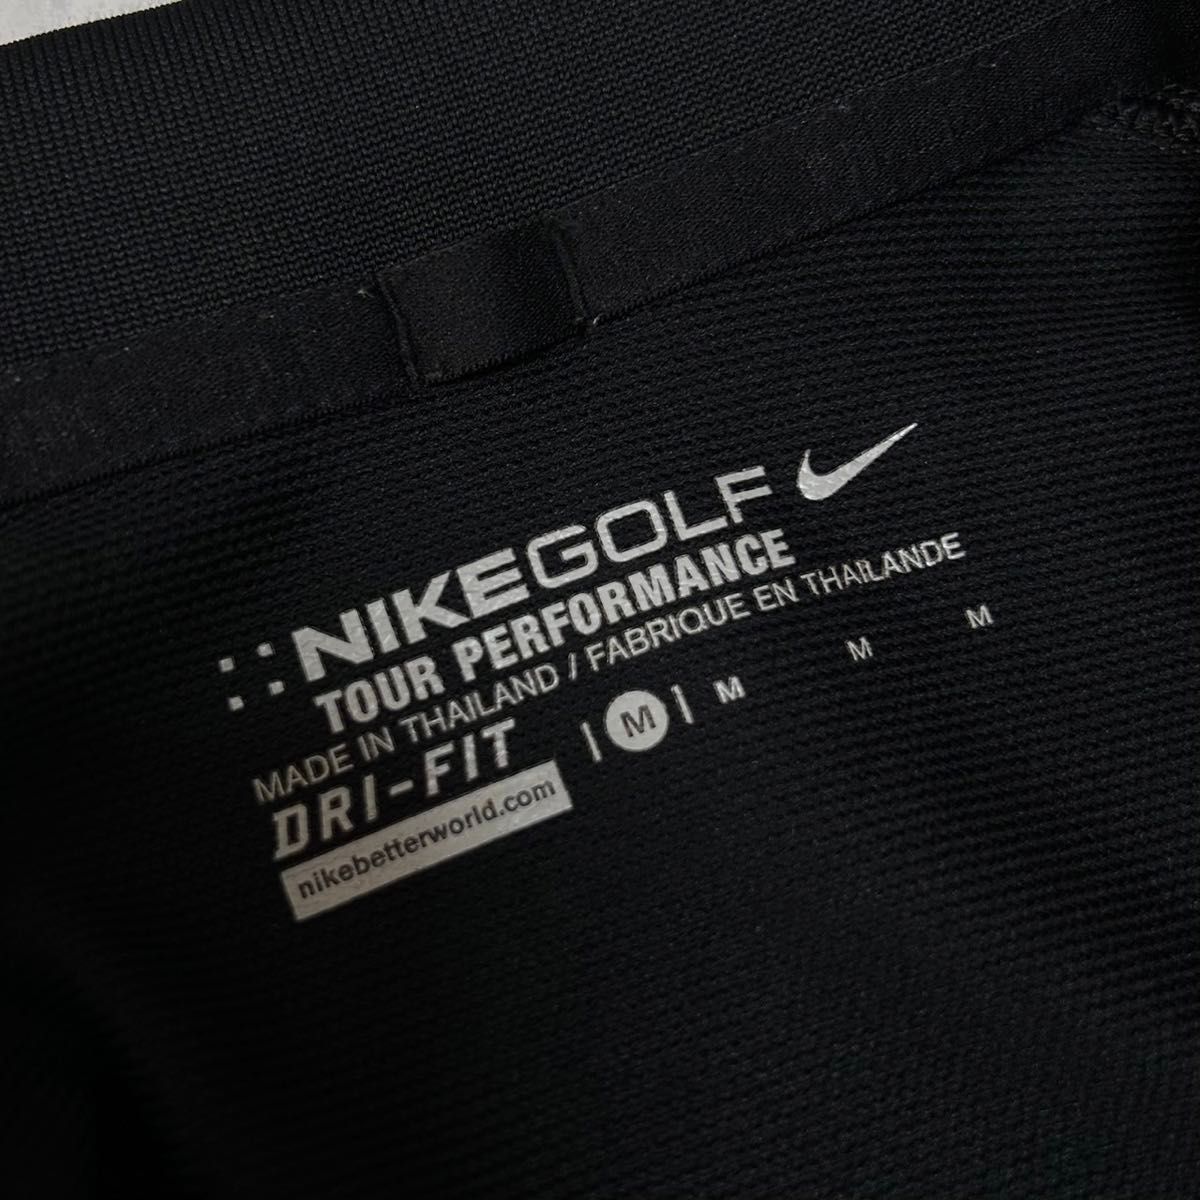 NIKE GOLF ナイキゴルフ Mサイズ ポロシャツ 半袖 ゴルフウェア ブラック